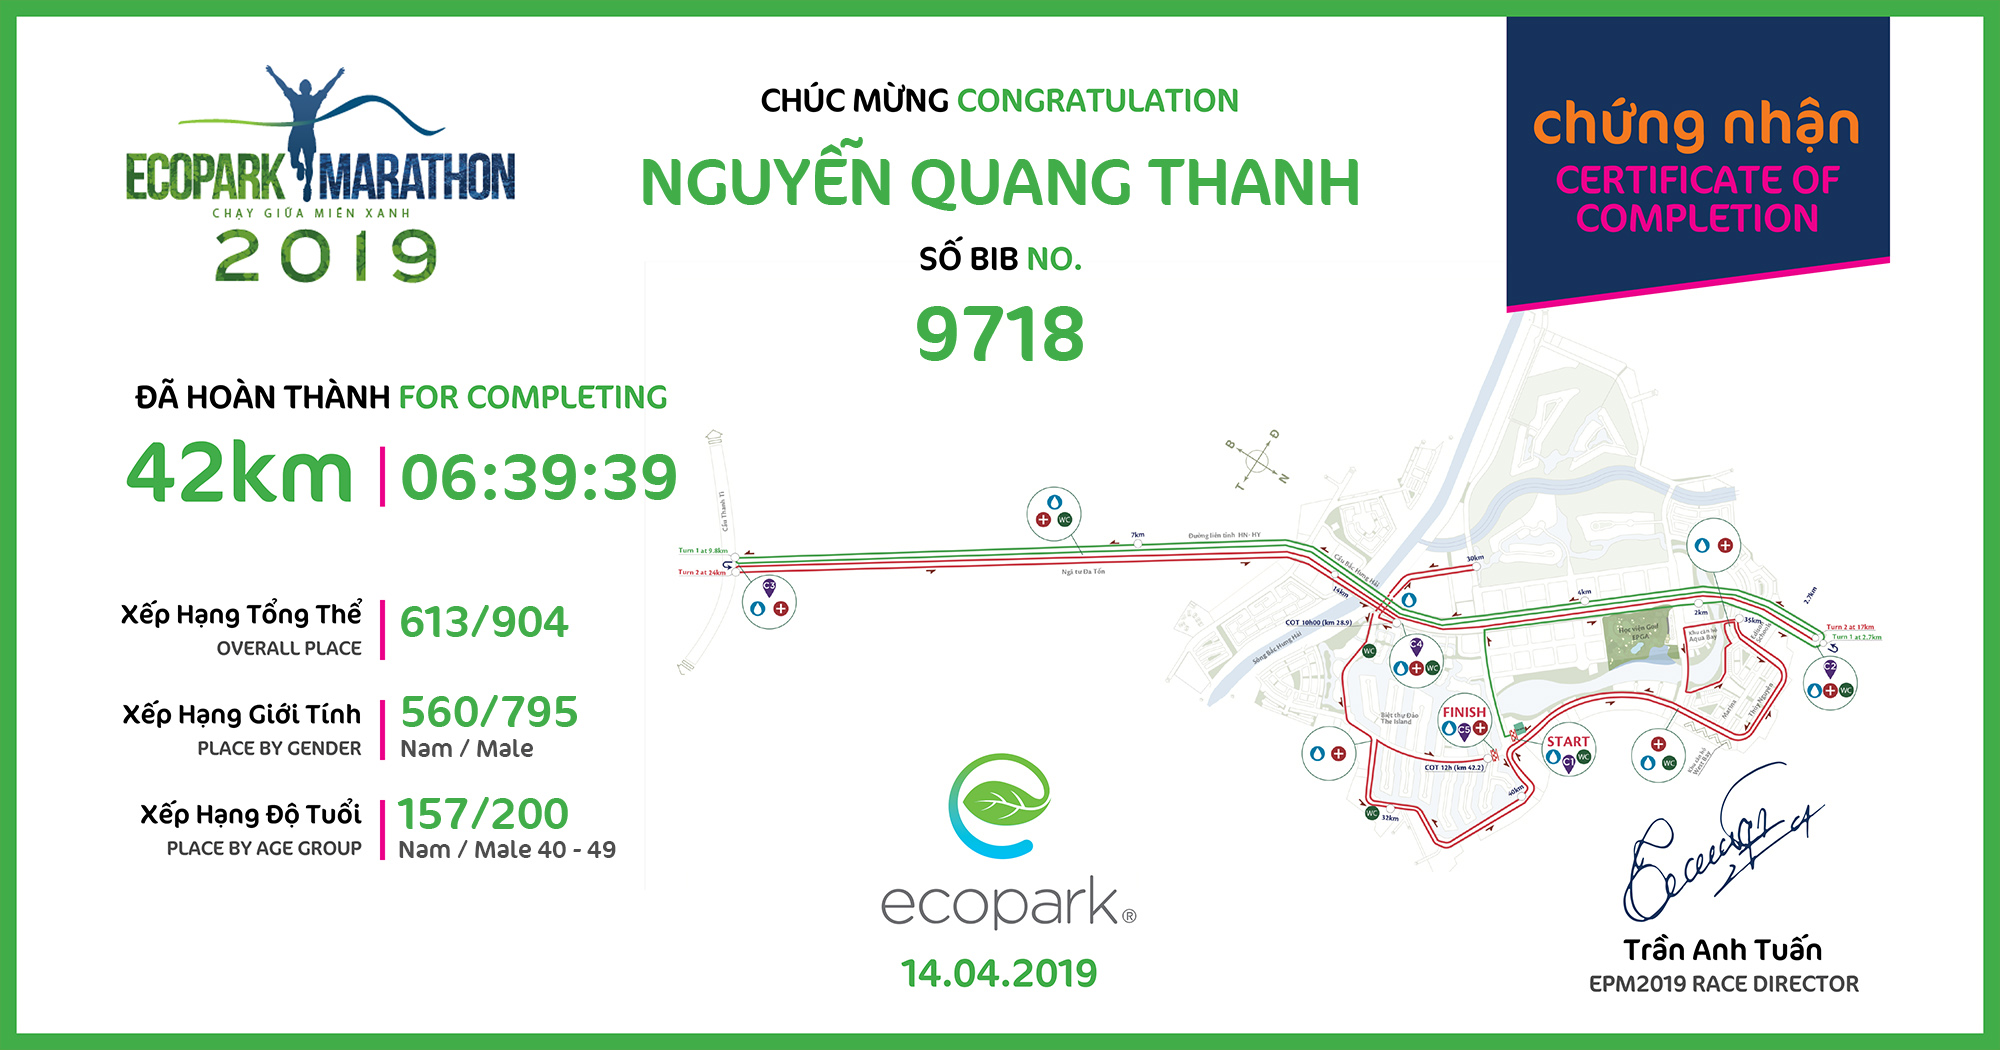 9718 - Nguyễn Quang Thanh